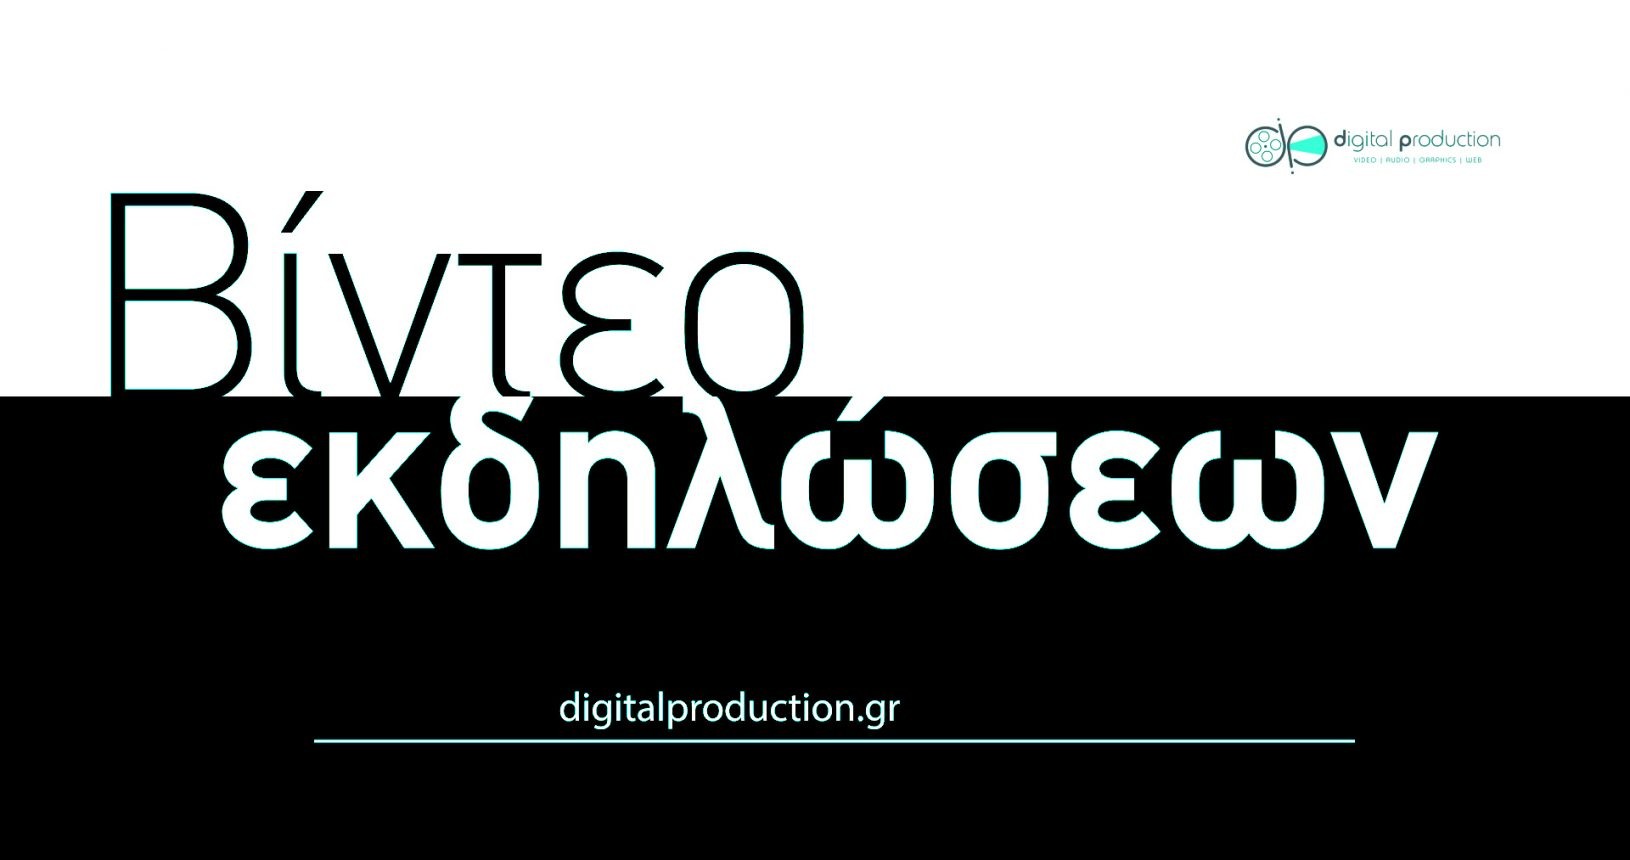 Δημιουργία βίντεο εκδηλώσεων | Digital Production